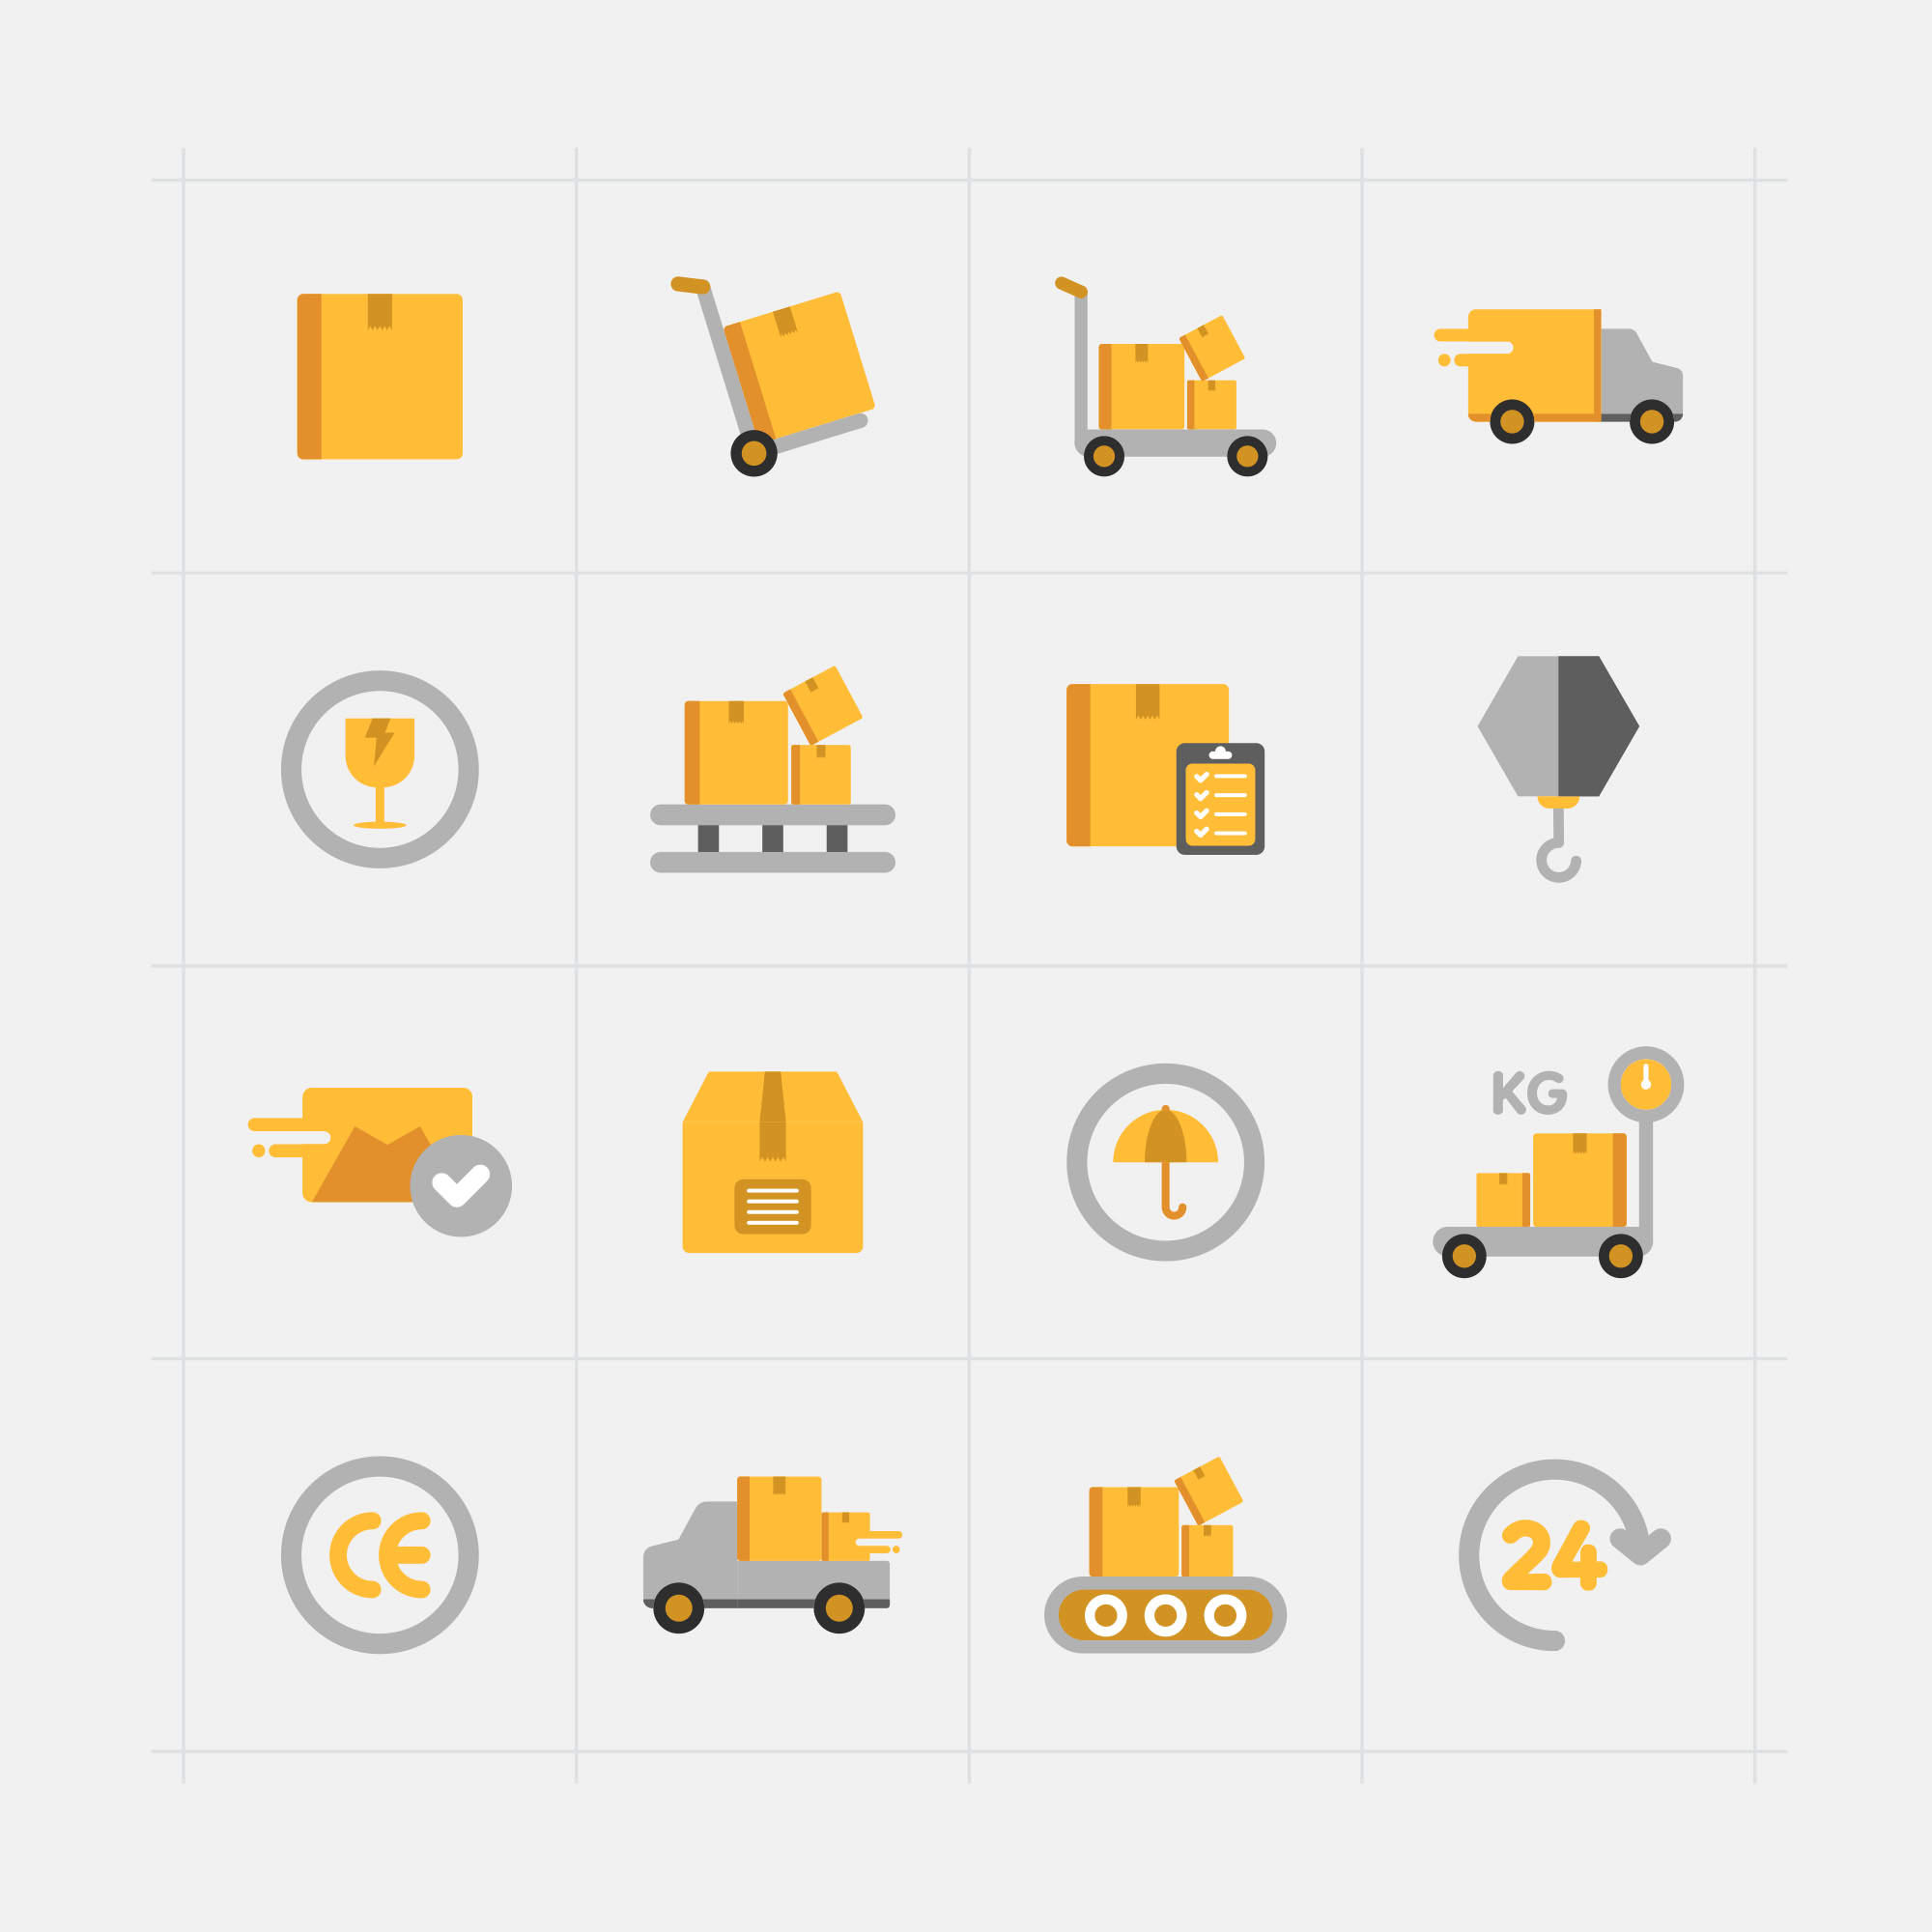 16枚快递配送主题矢量彩色素材库精选图标 16 Delivery Vector Icons插图